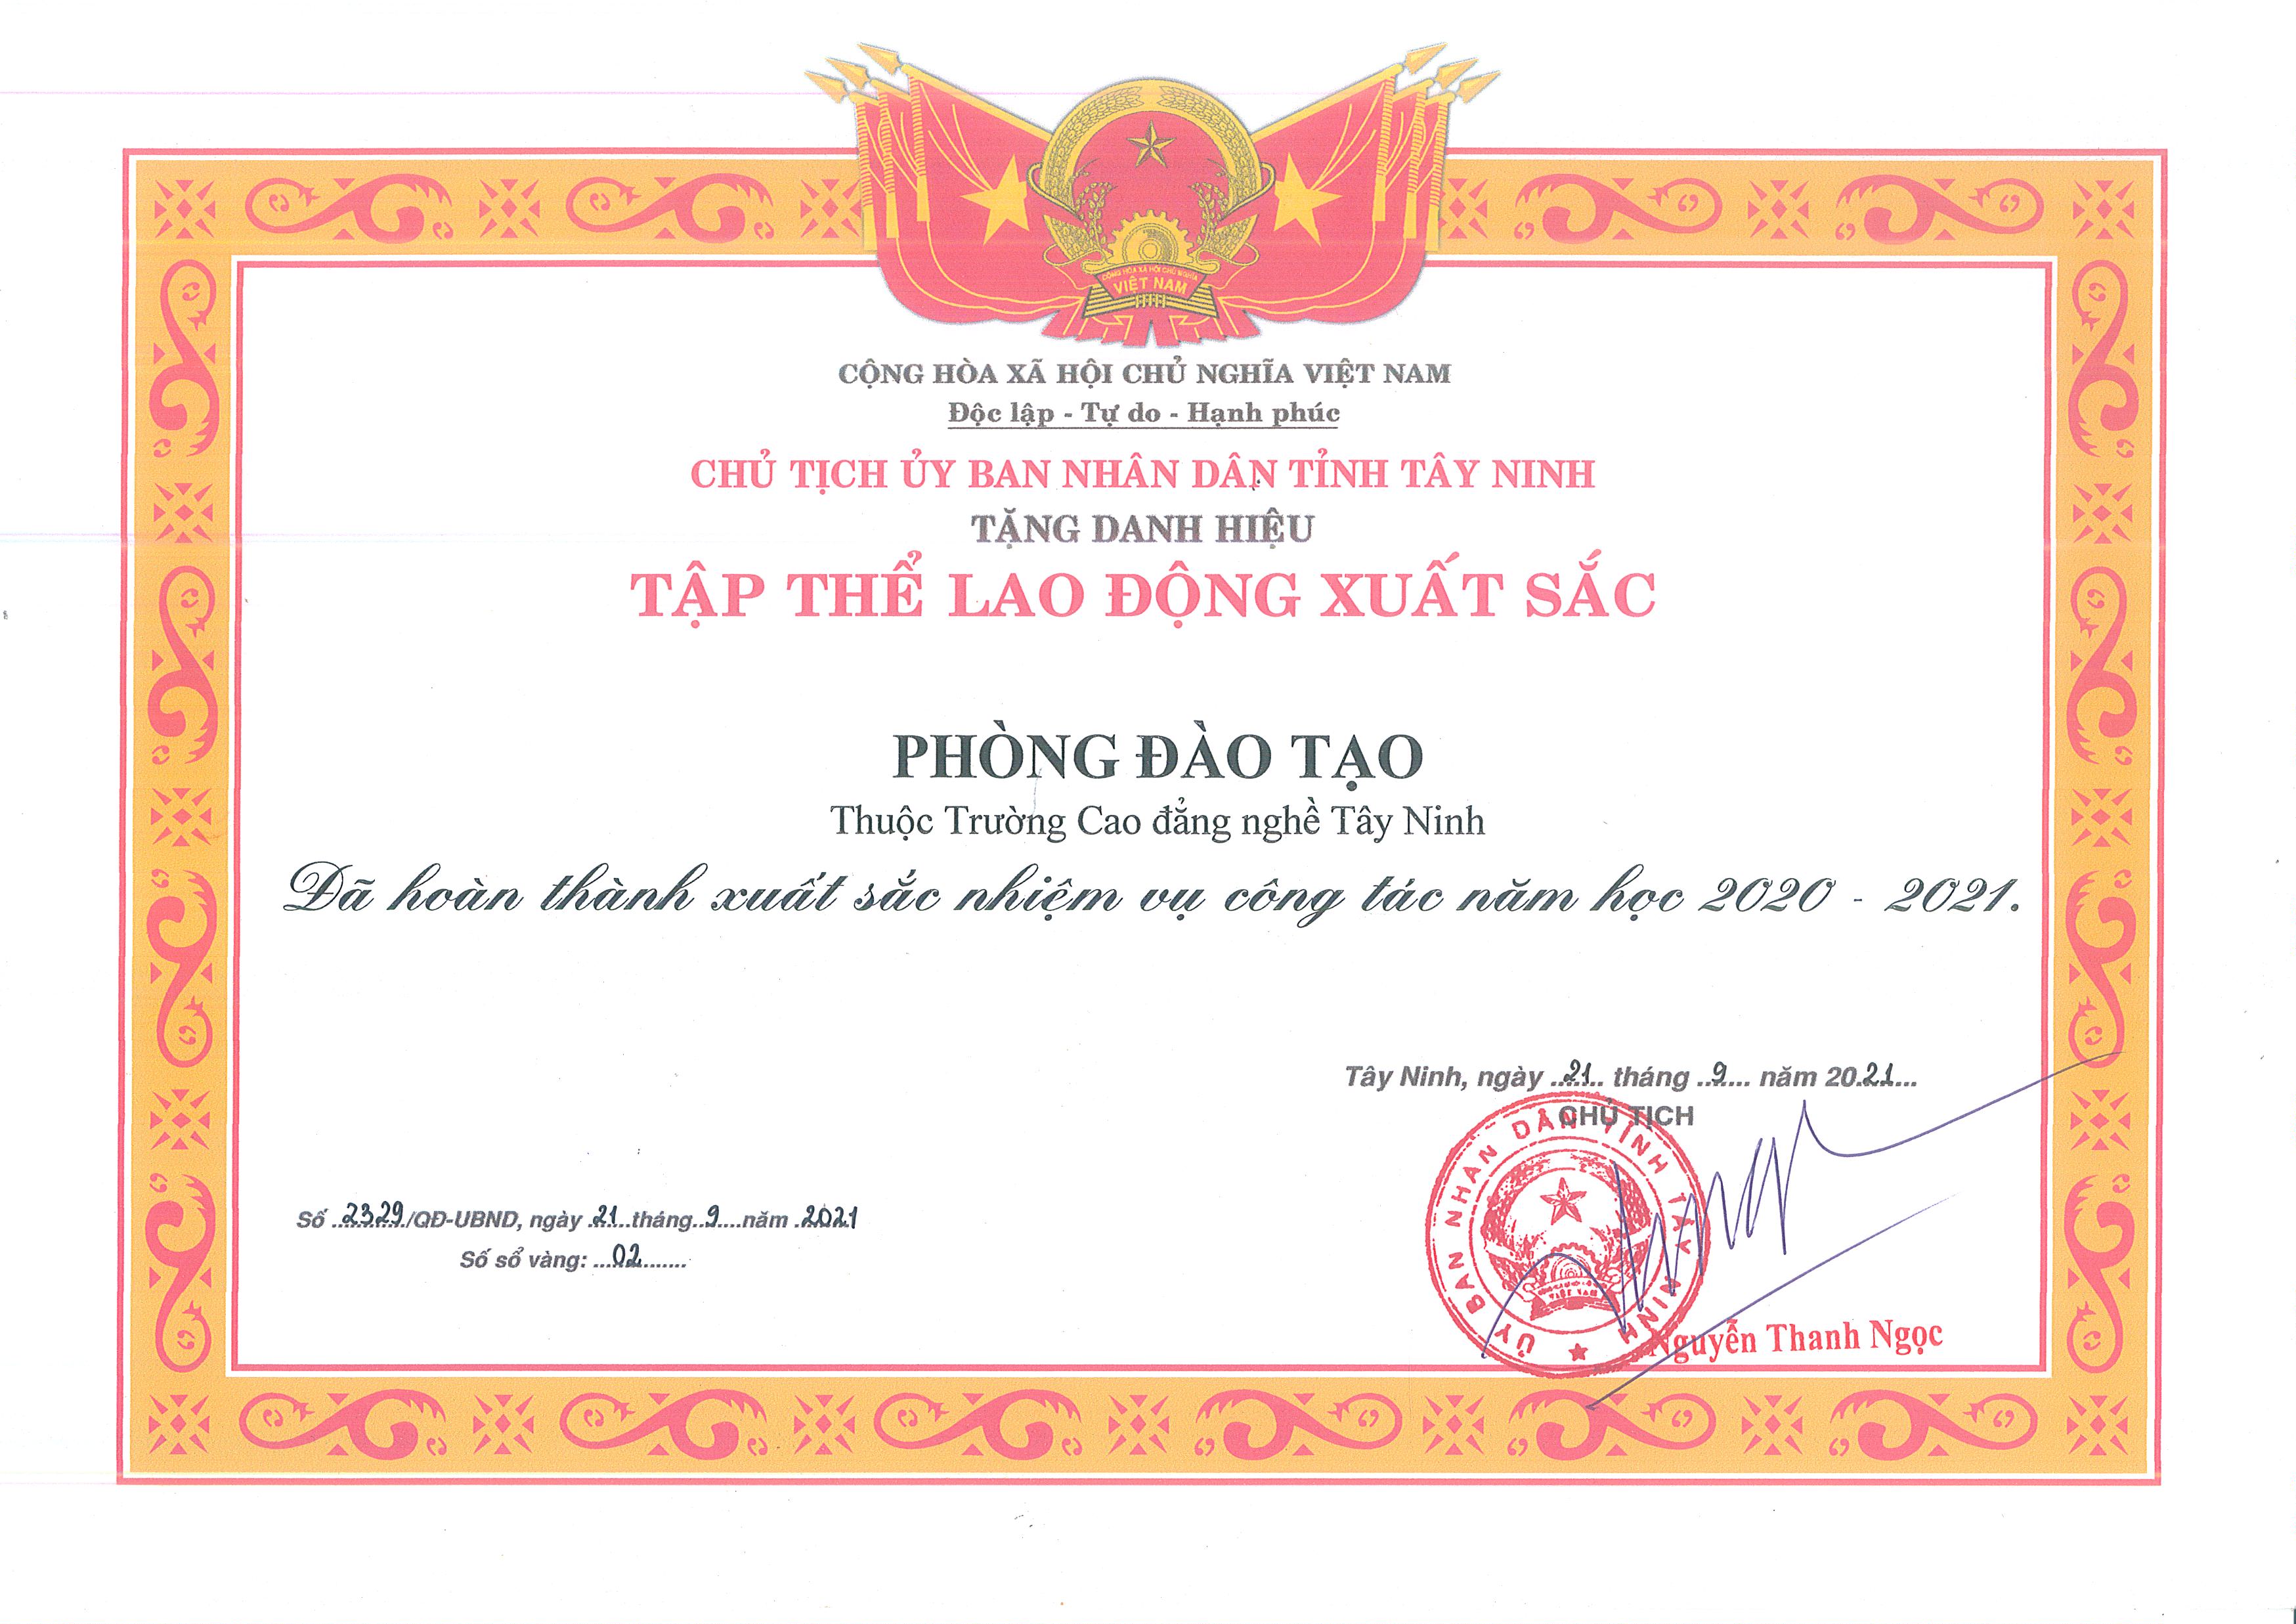 Phòng Đào tạo trường Cao đẳng nghề Tây Ninh nhận Danh hiệu tập thể lao động xuất sắc của Chủ tịch UBND tỉnh Tây Ninh năm học 2020-2021